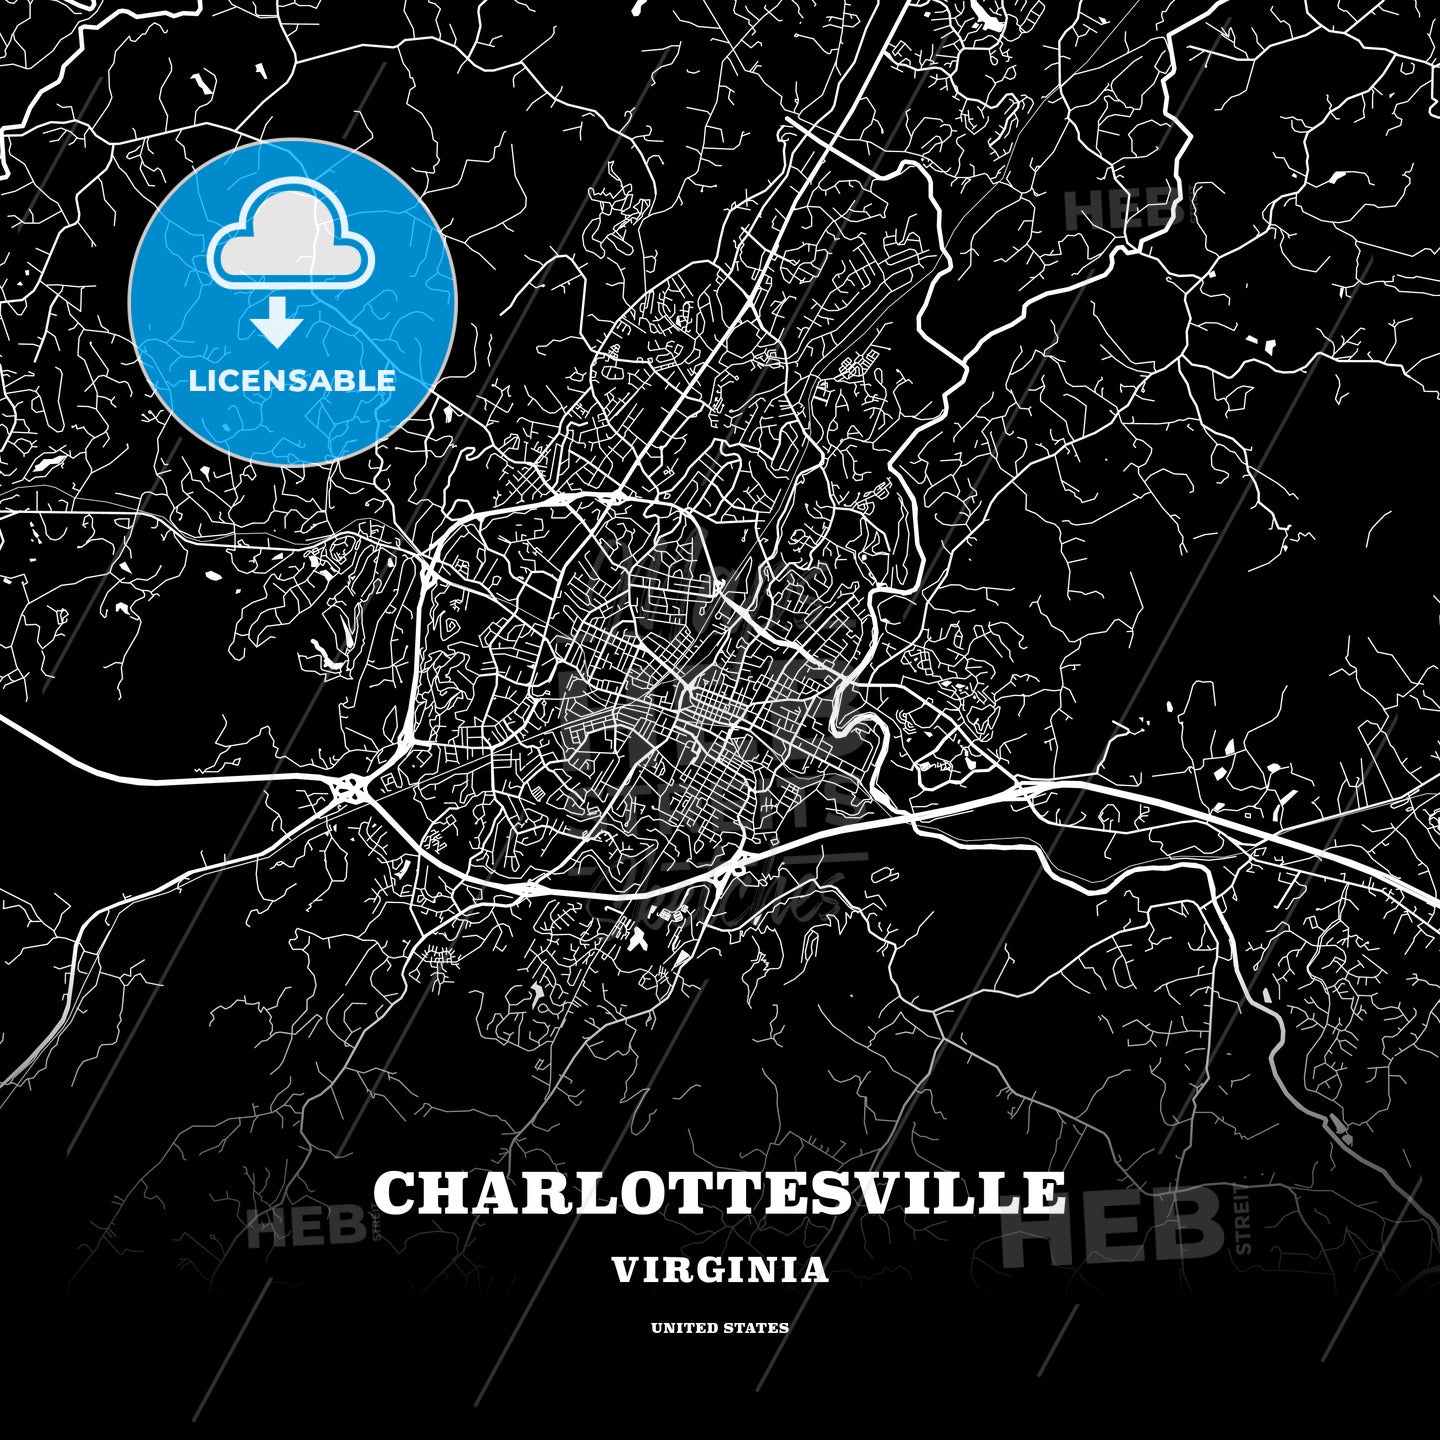 Charlottesville, Virginia, USA map